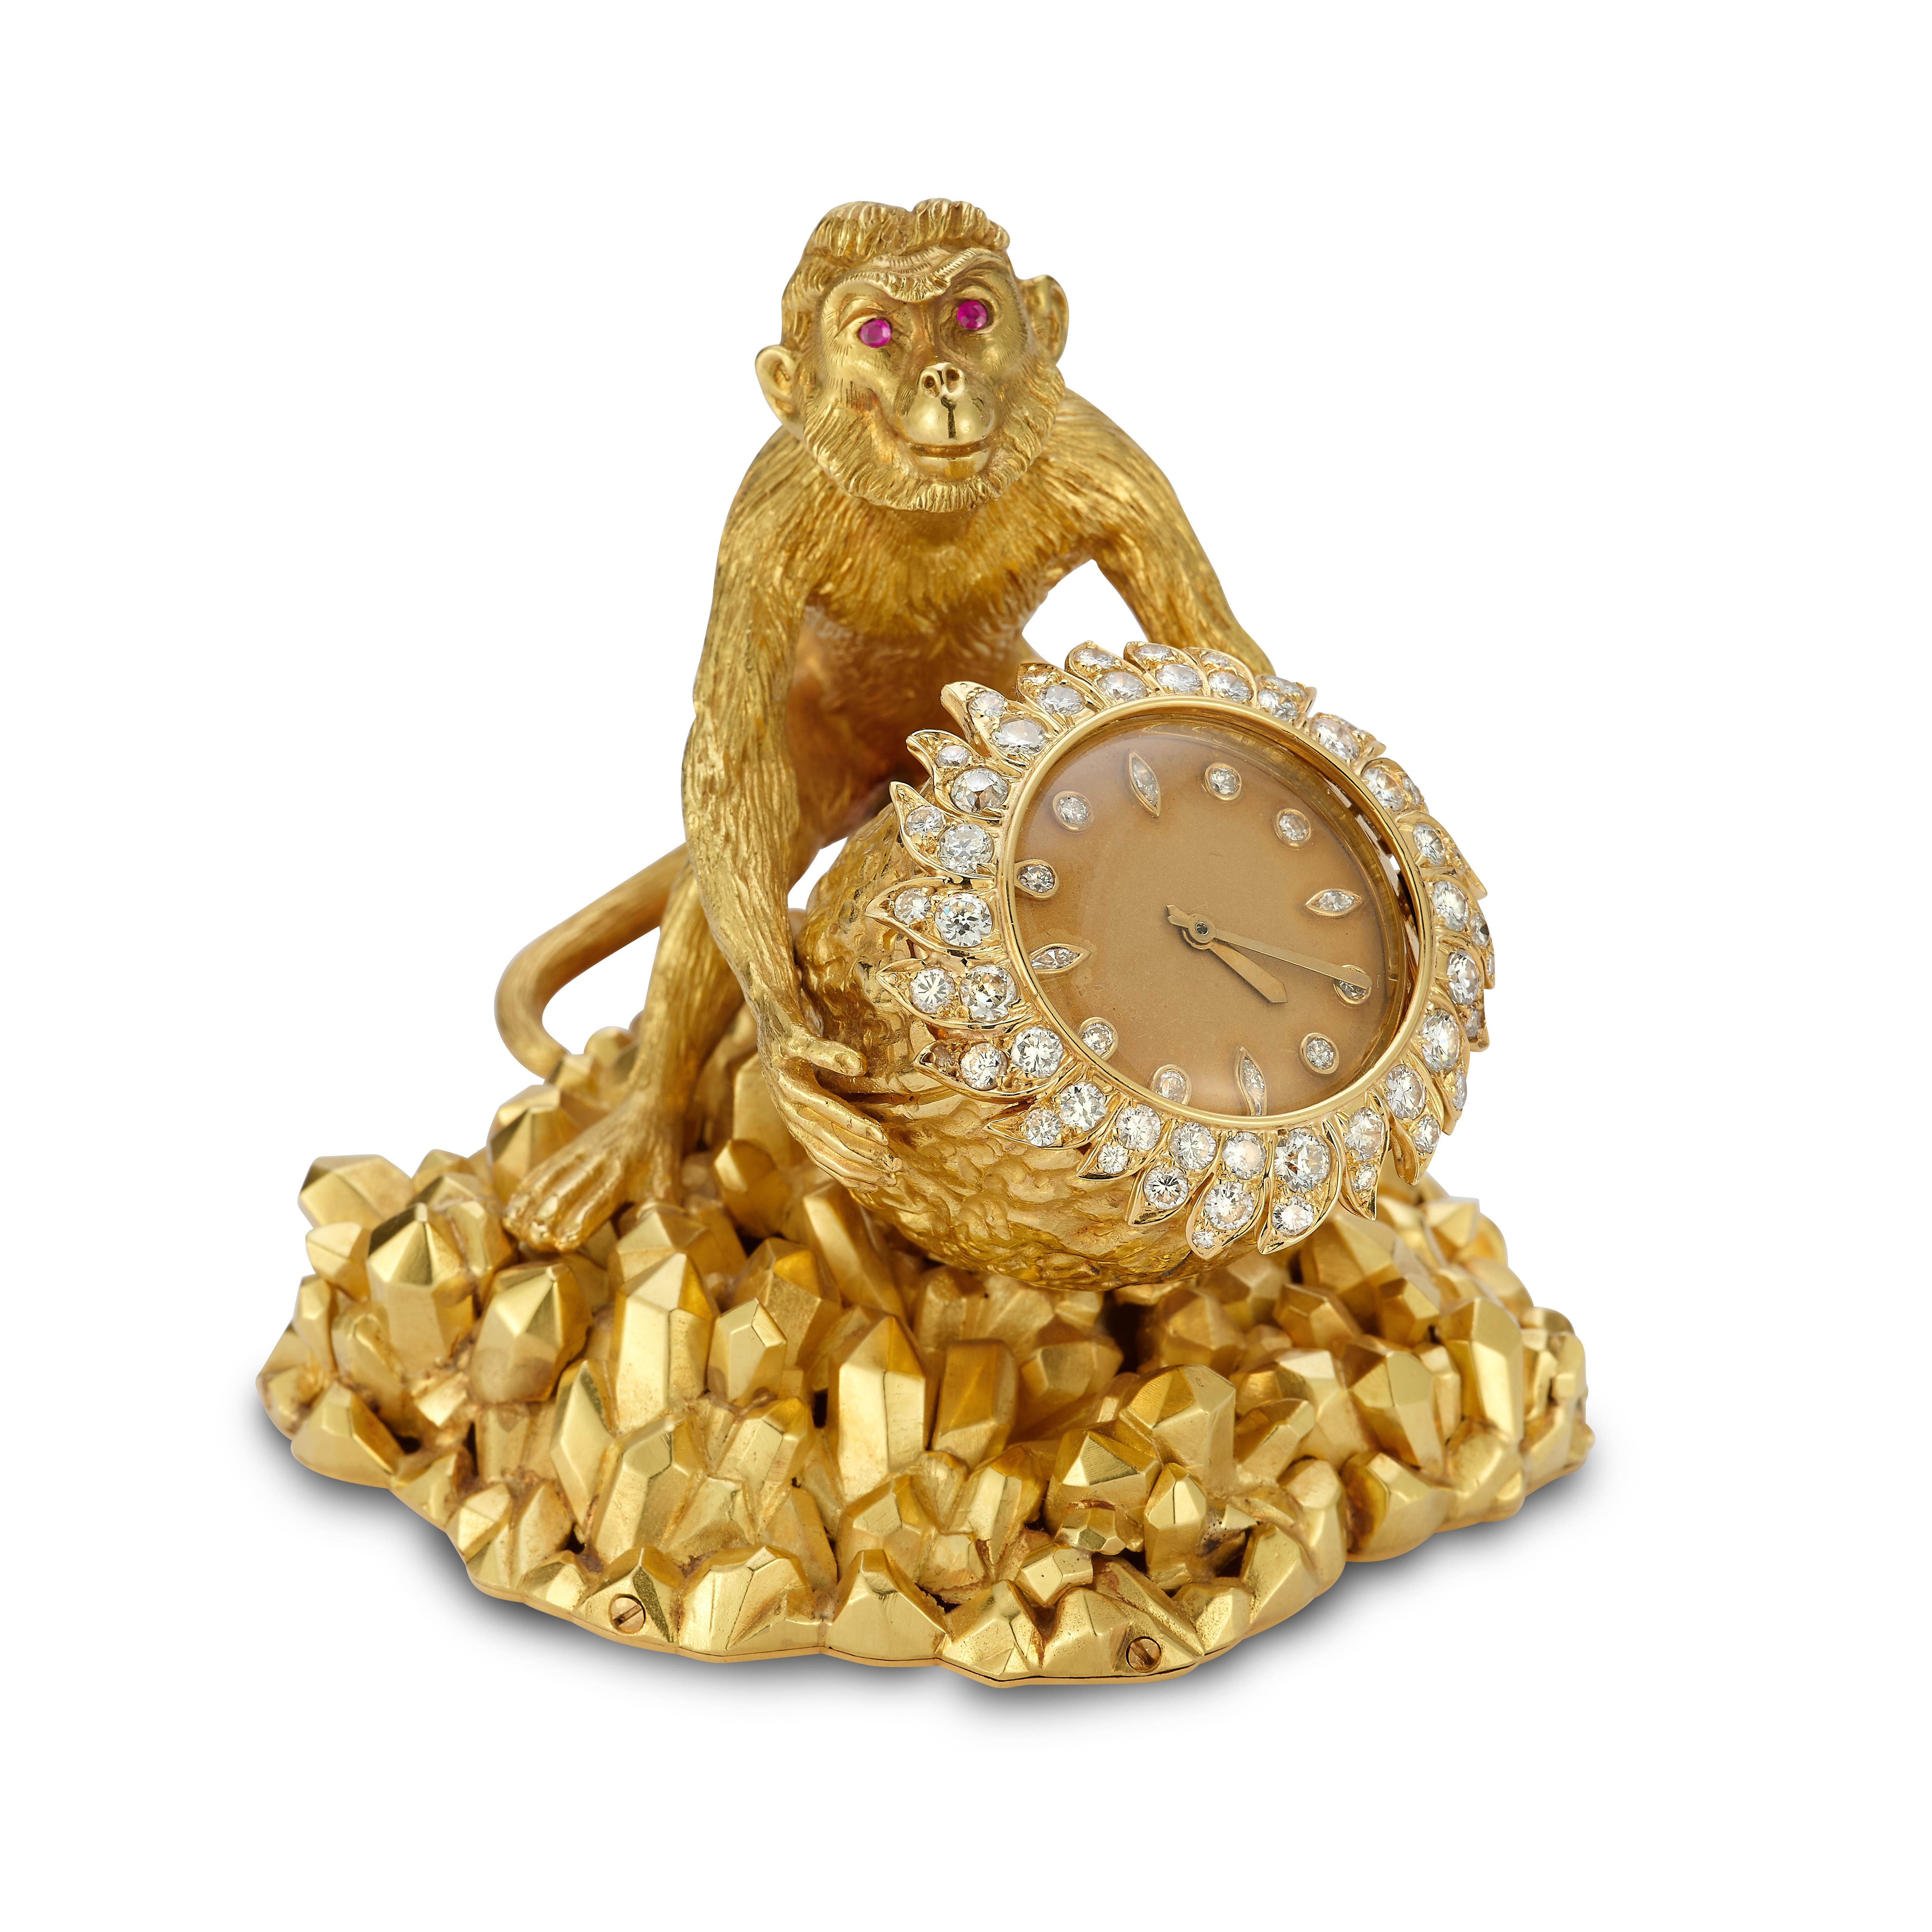 Horloge de bureau David Webb Monkey

Pendule de bureau en or jaune 18 carats conçue en forme de noix, ornée de diamants ronds et de taille marquise. L'horloge est tenue par un singe aux yeux ronds et taillés en rubis. Le poids total des diamants est